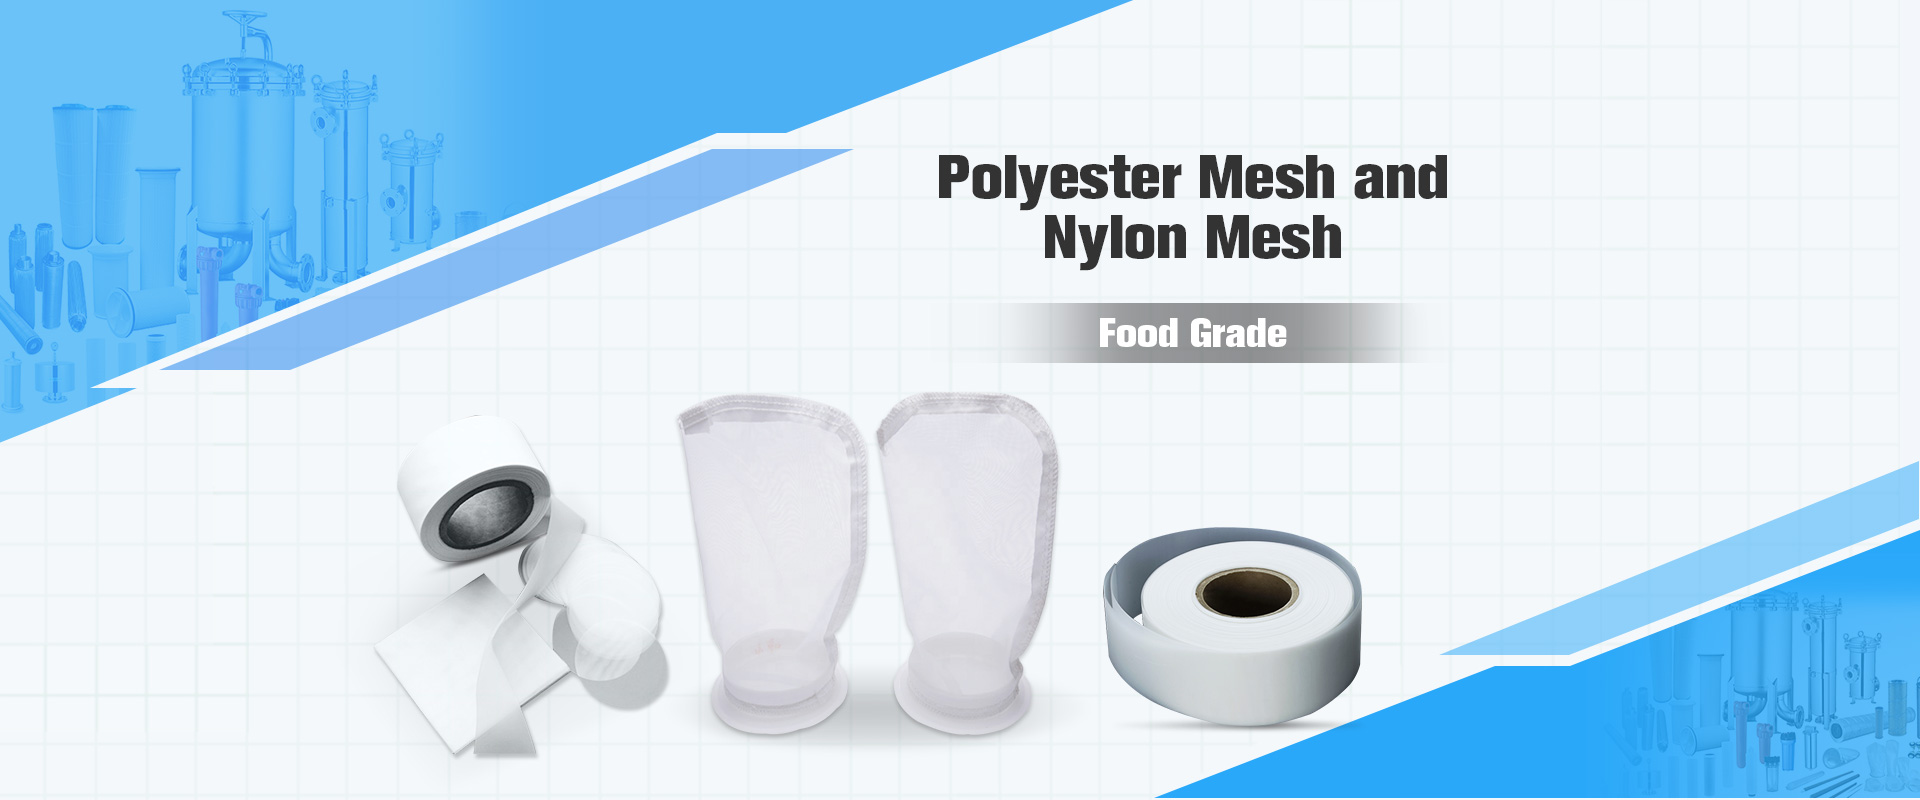 Polyester Mesh and Nylon Mesh